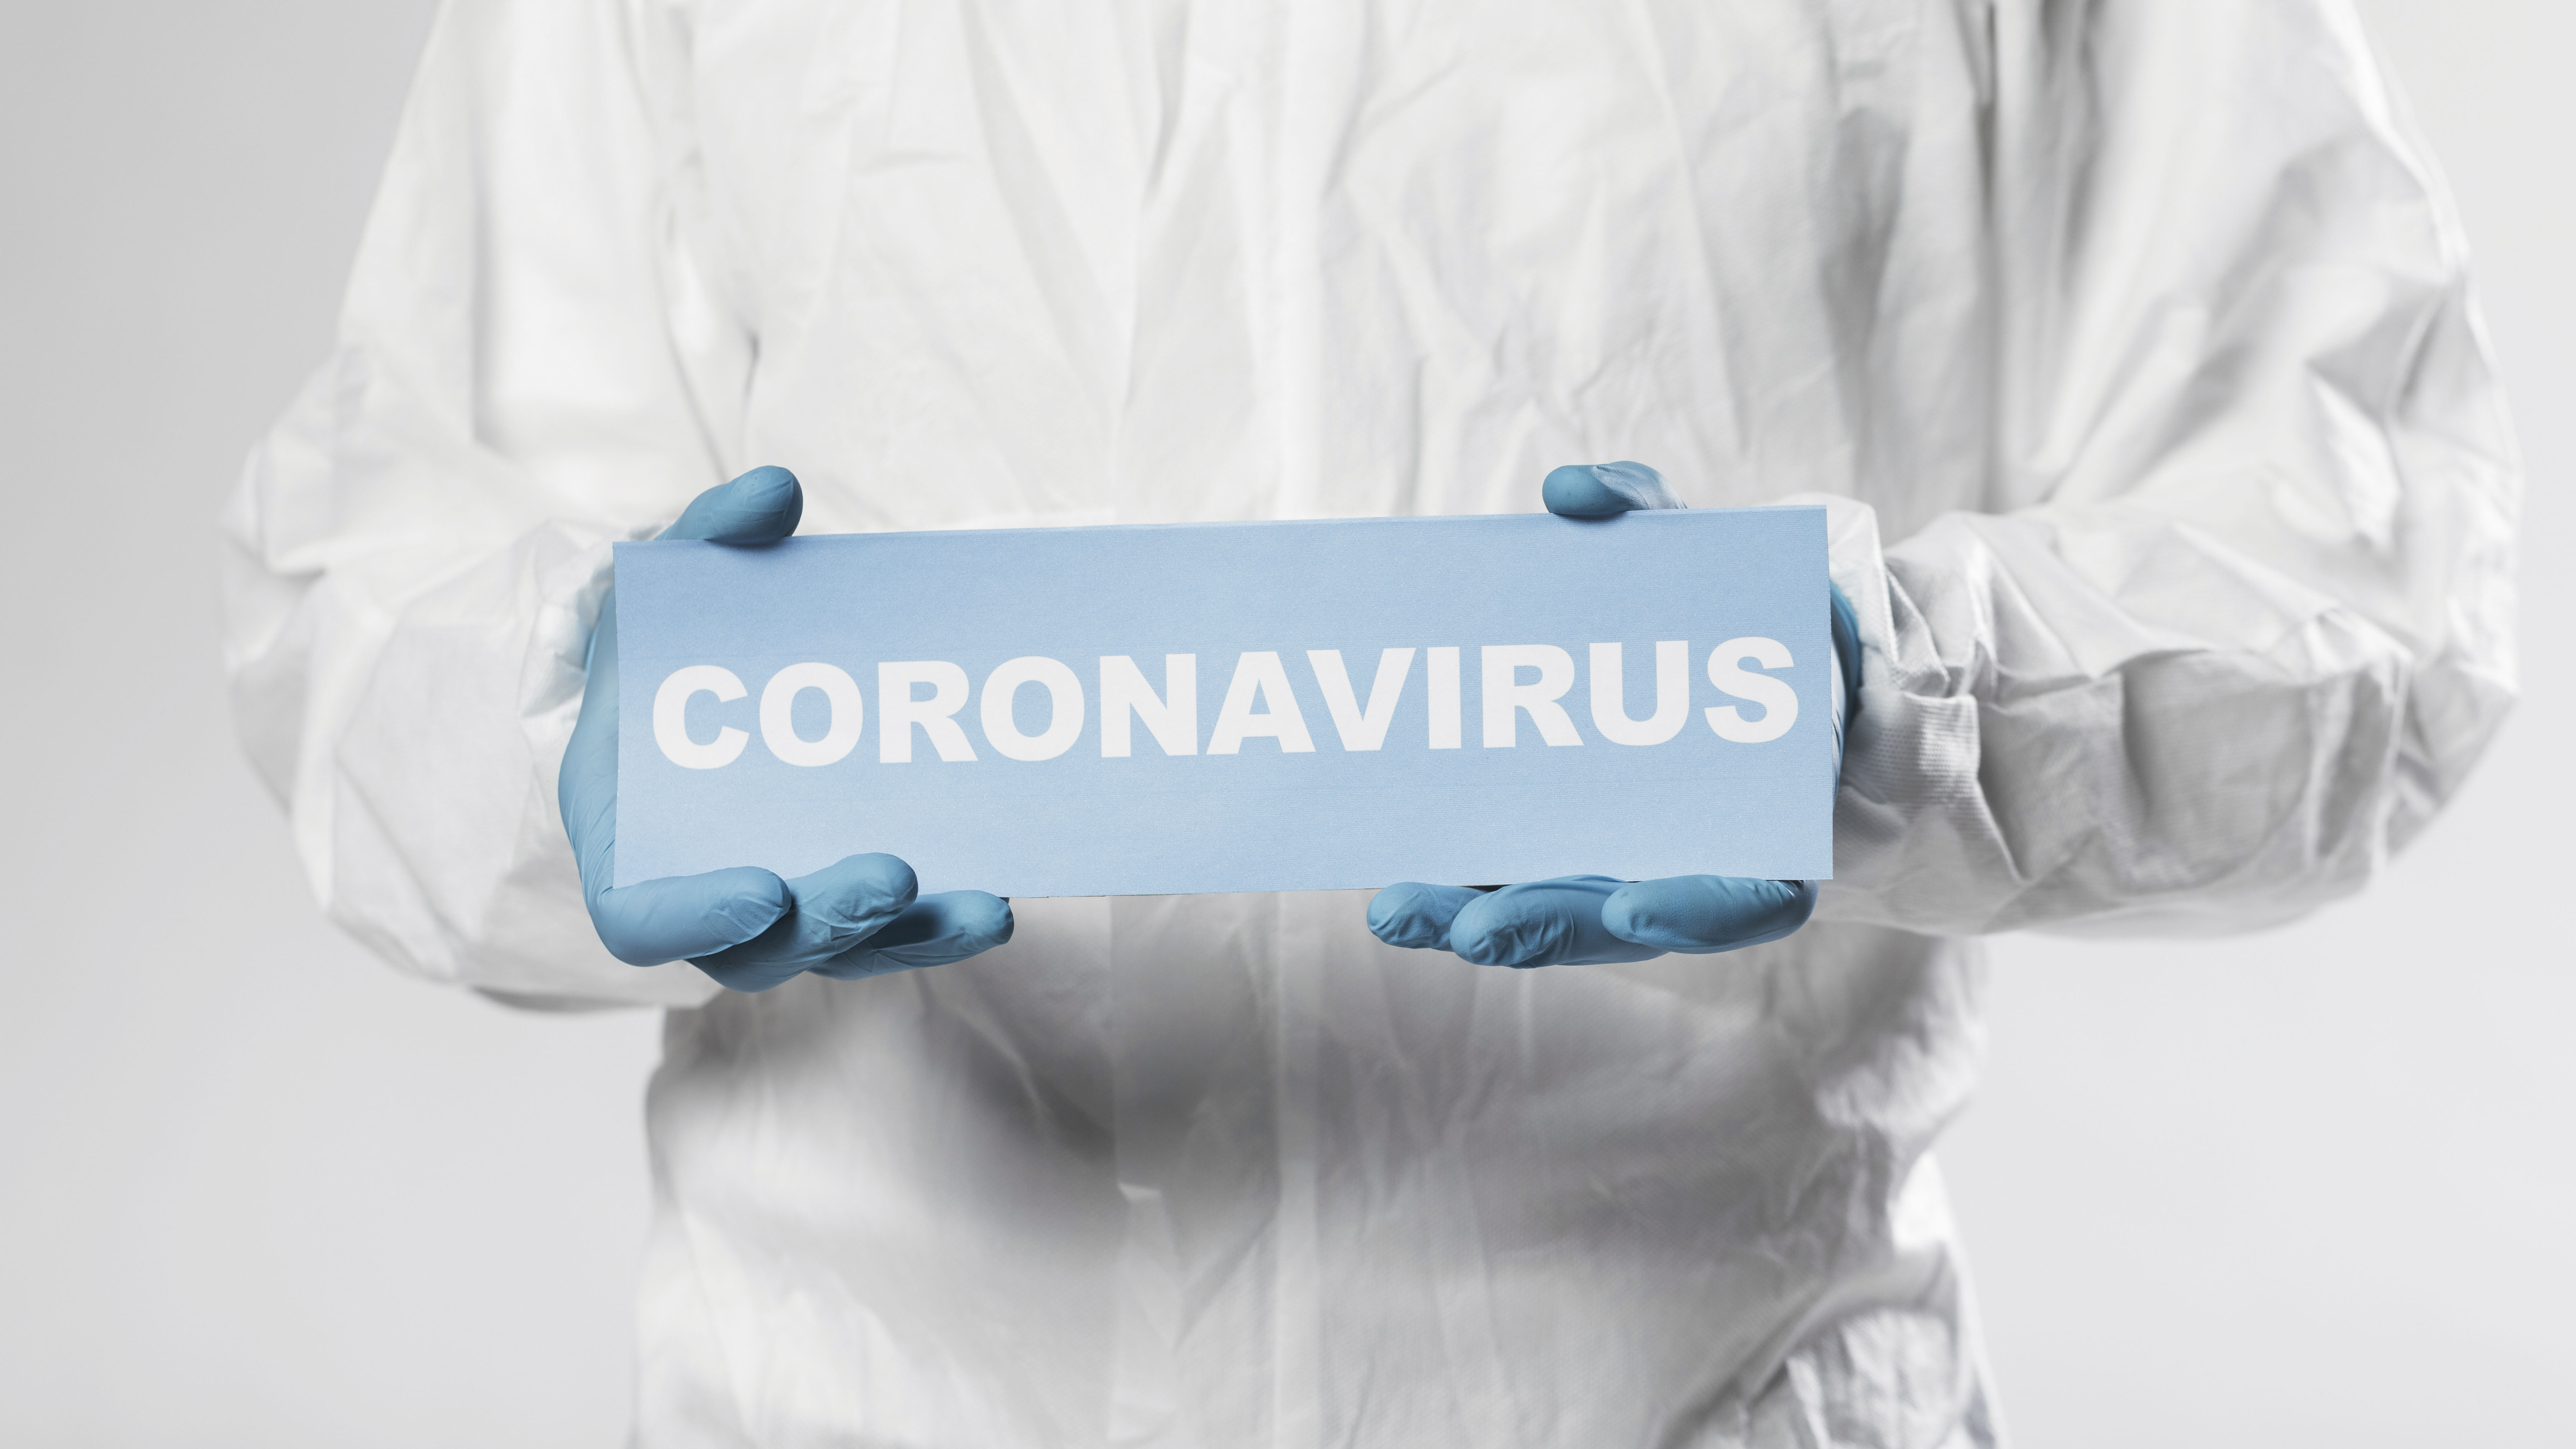 KKTC’nin İlk Koronavirüs Vakası